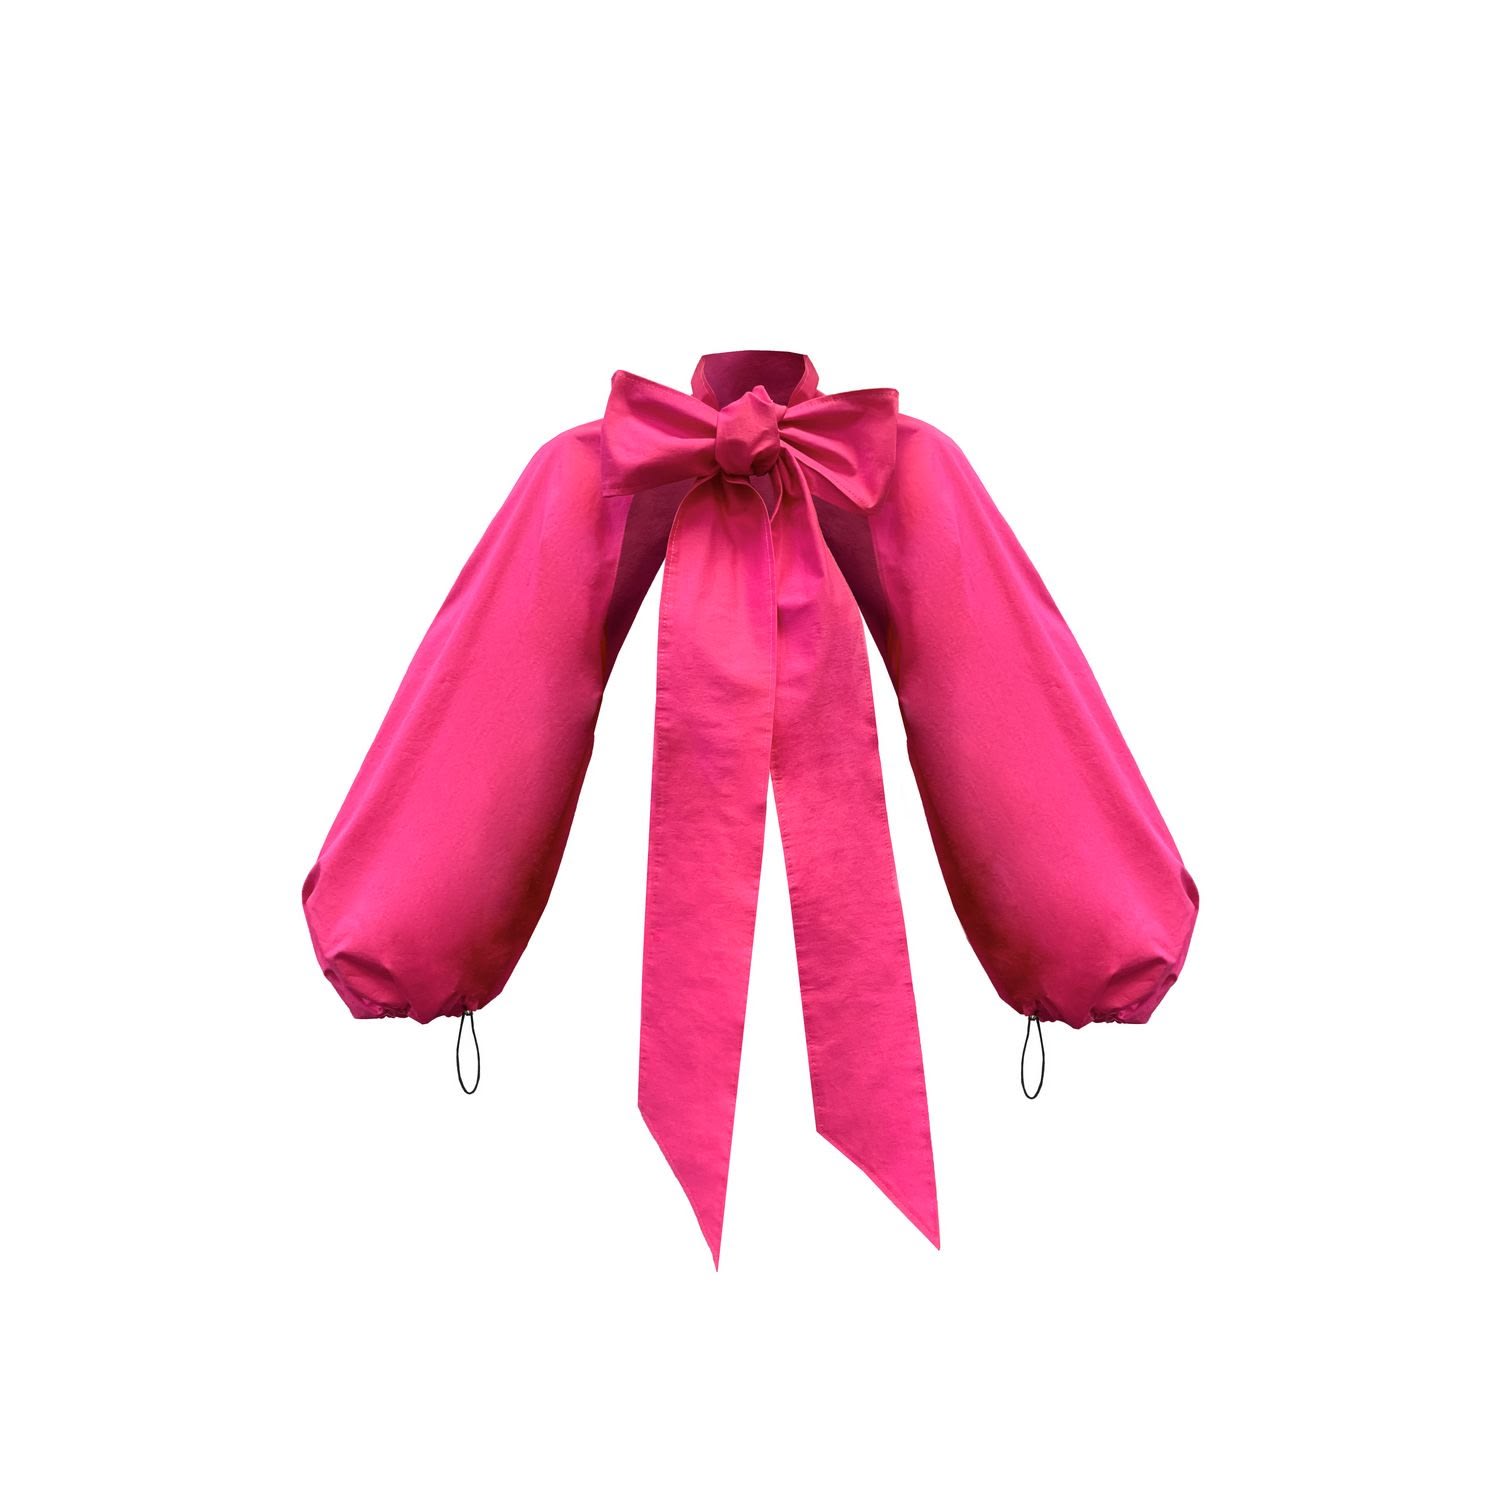 Monosuit Women's Pink / Purple Bolero Long Sleeves Fuchsia